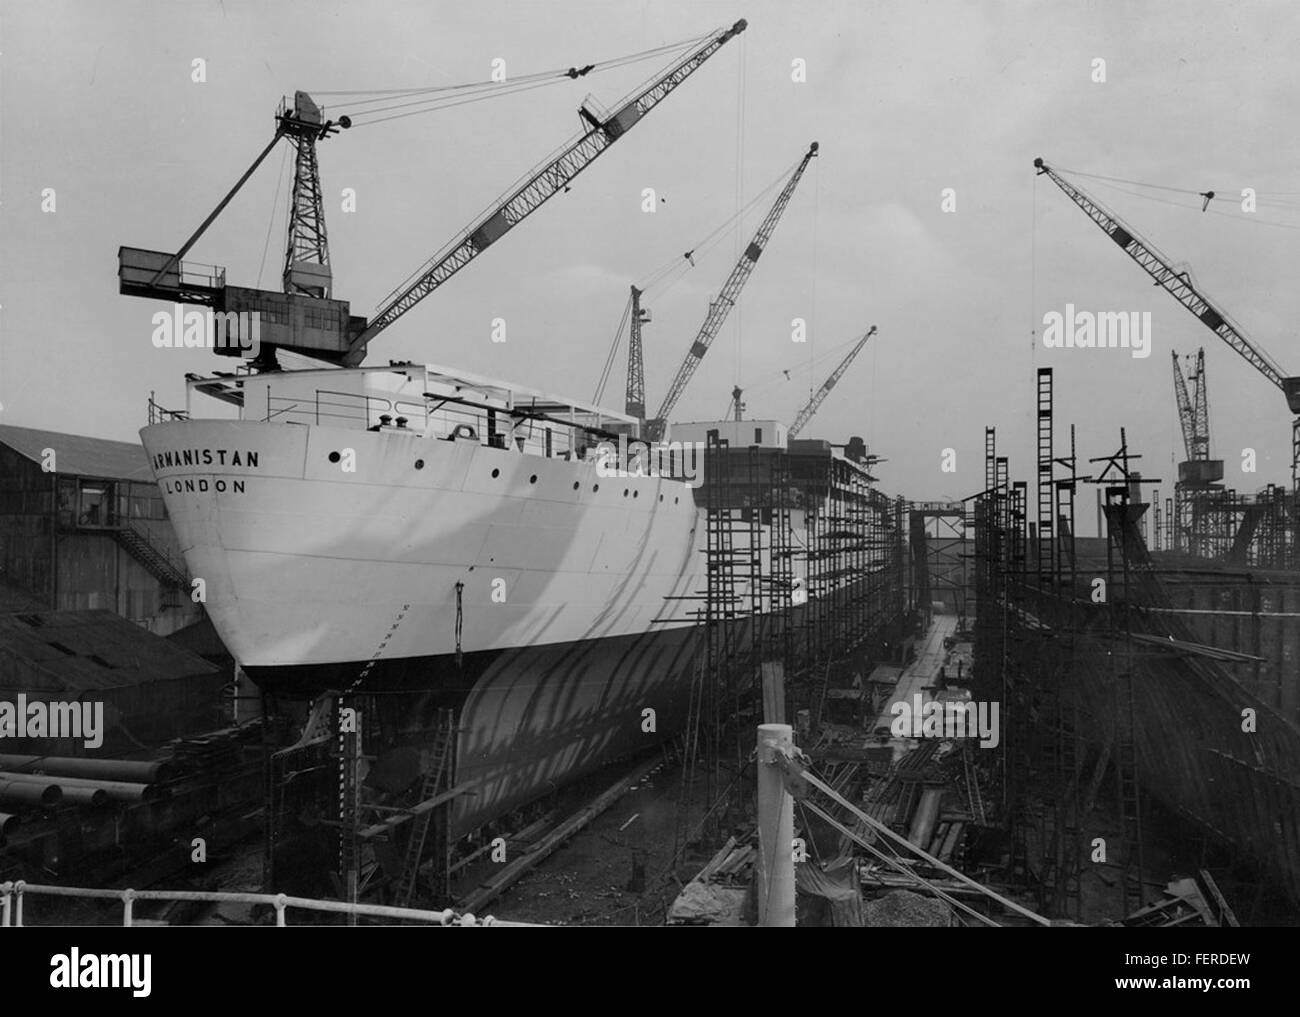 Vista di poppa della nave cargo 'Armanistan' vista di poppa della nave cargo 'Armanistan' Foto Stock